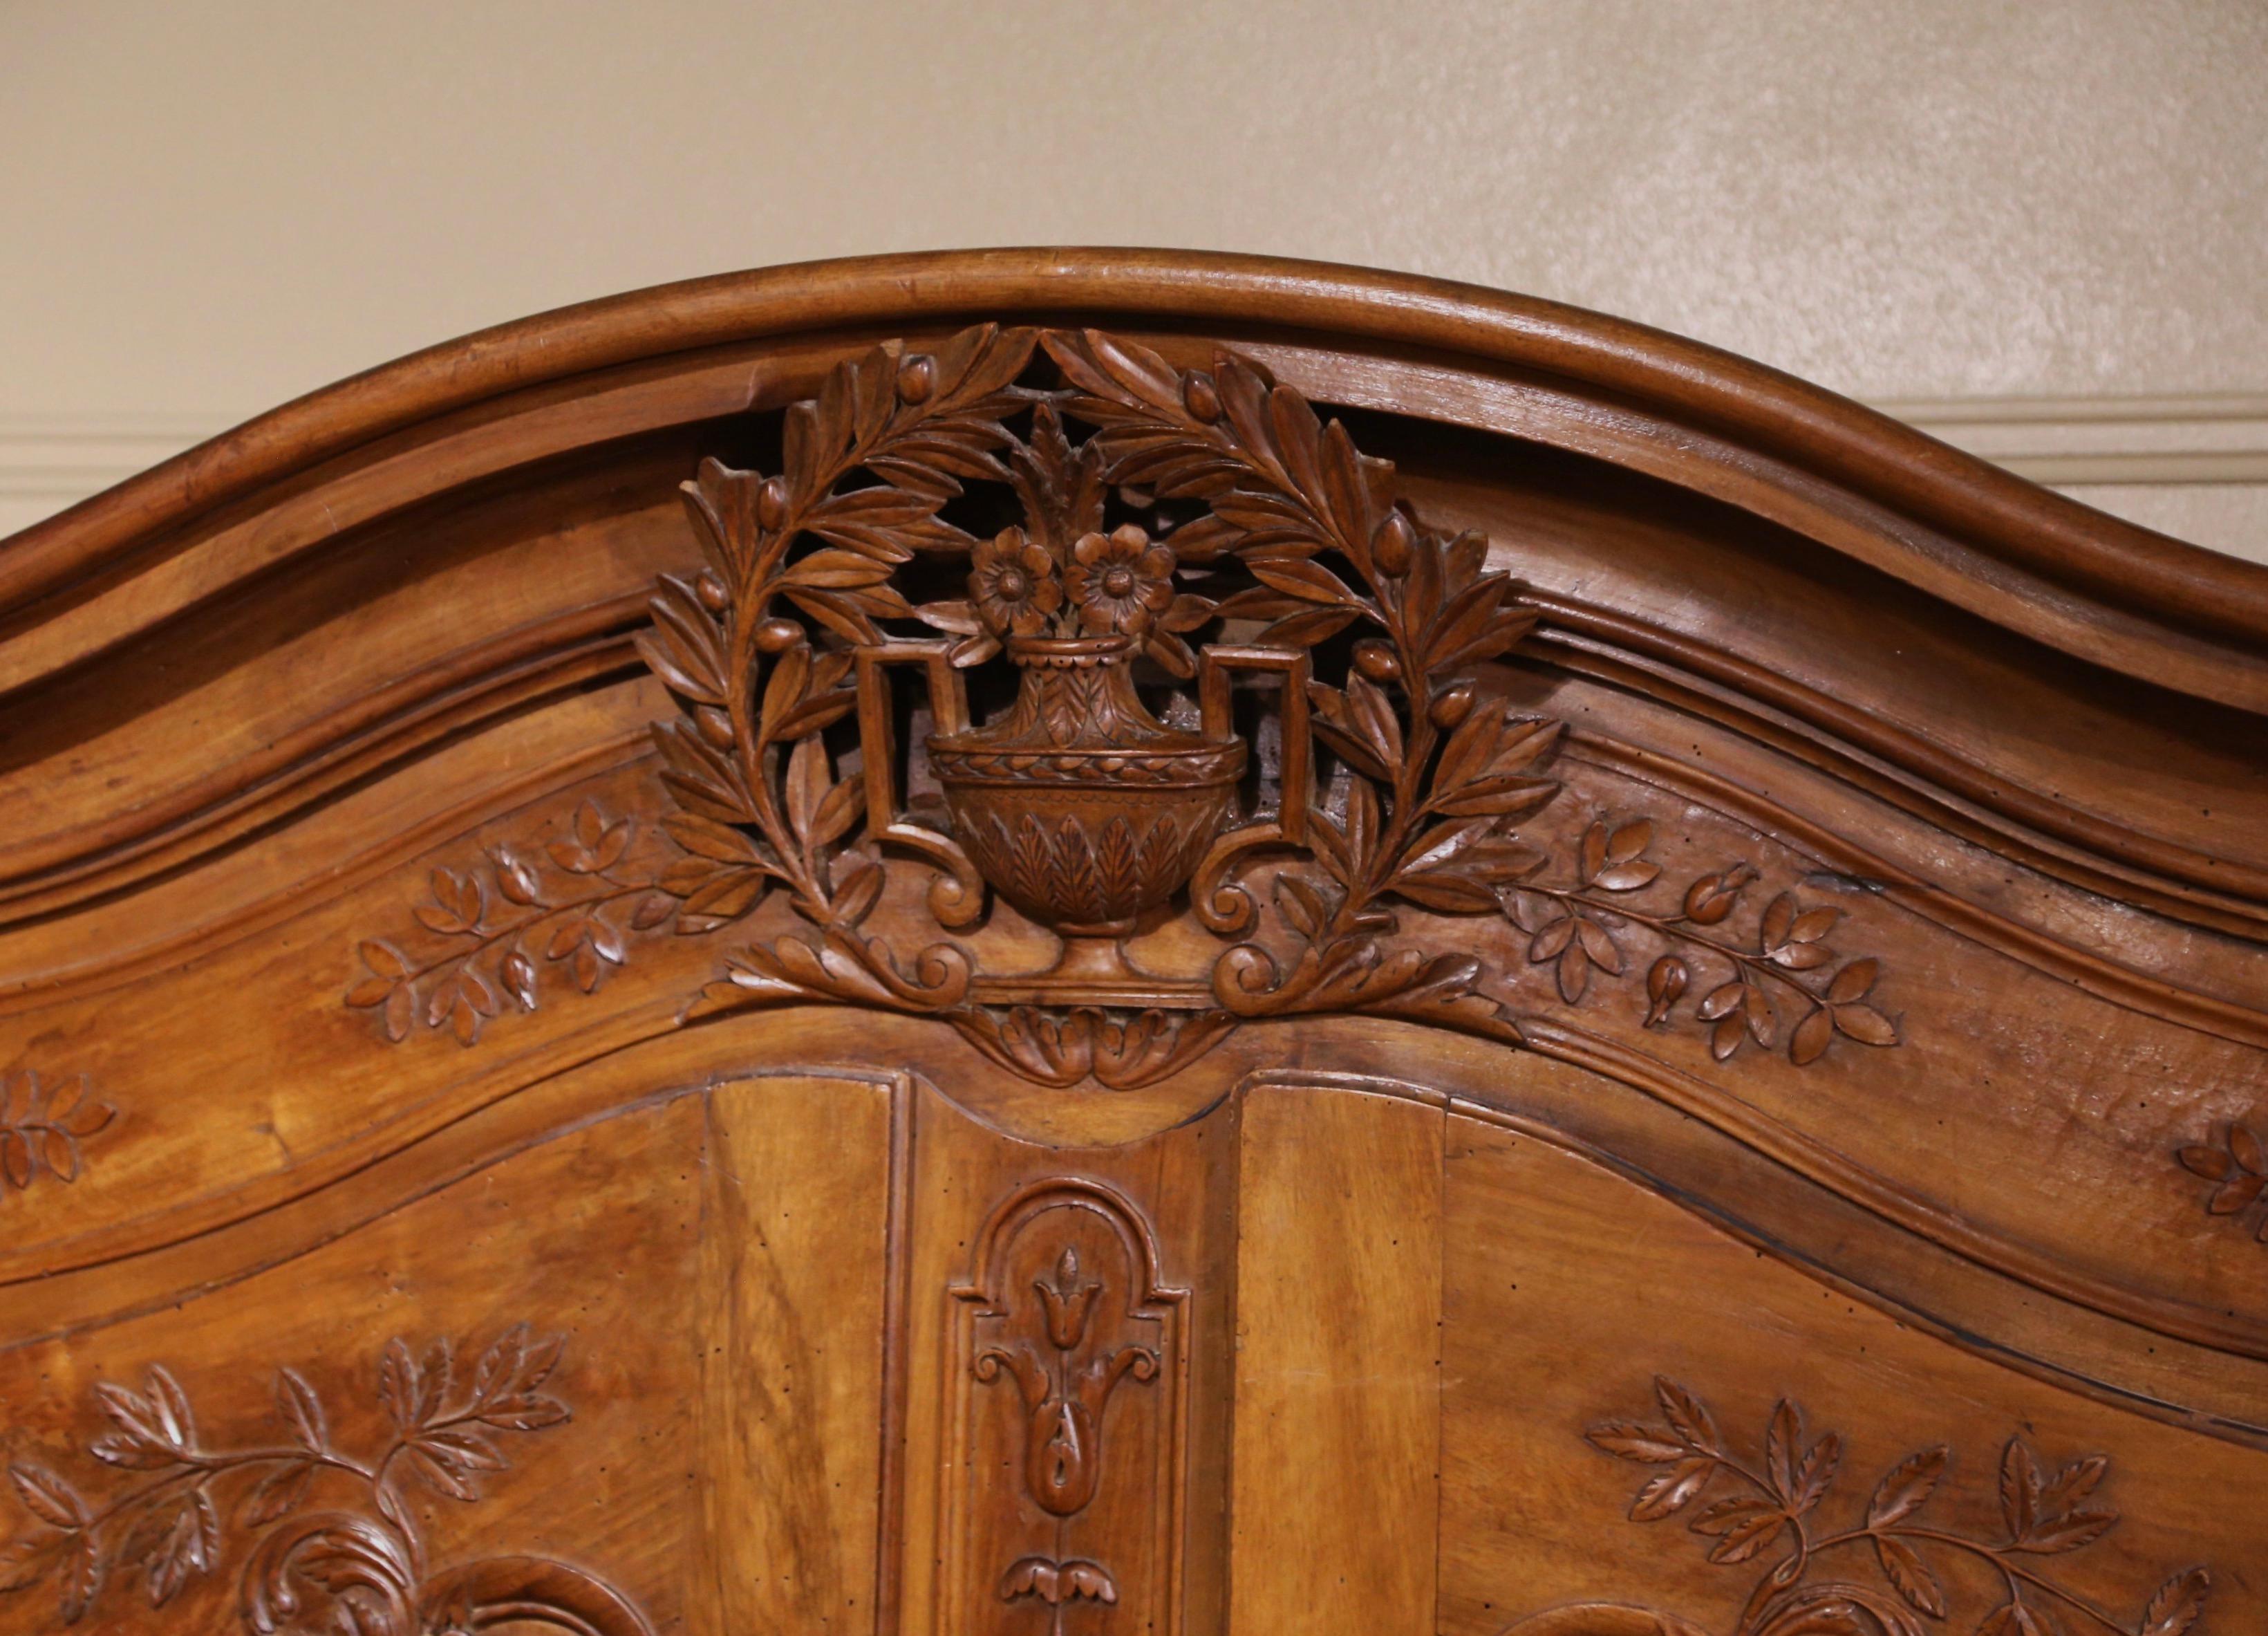 Cette élégante armoire provençale ancienne en bois fruitier est vraiment exceptionnelle. Fabriqué en France vers 1760, ce grand meuble repose sur des pieds en escargot décorés de feuilles d'acanthe à l'épaulement, au-dessus d'un tablier festonné et